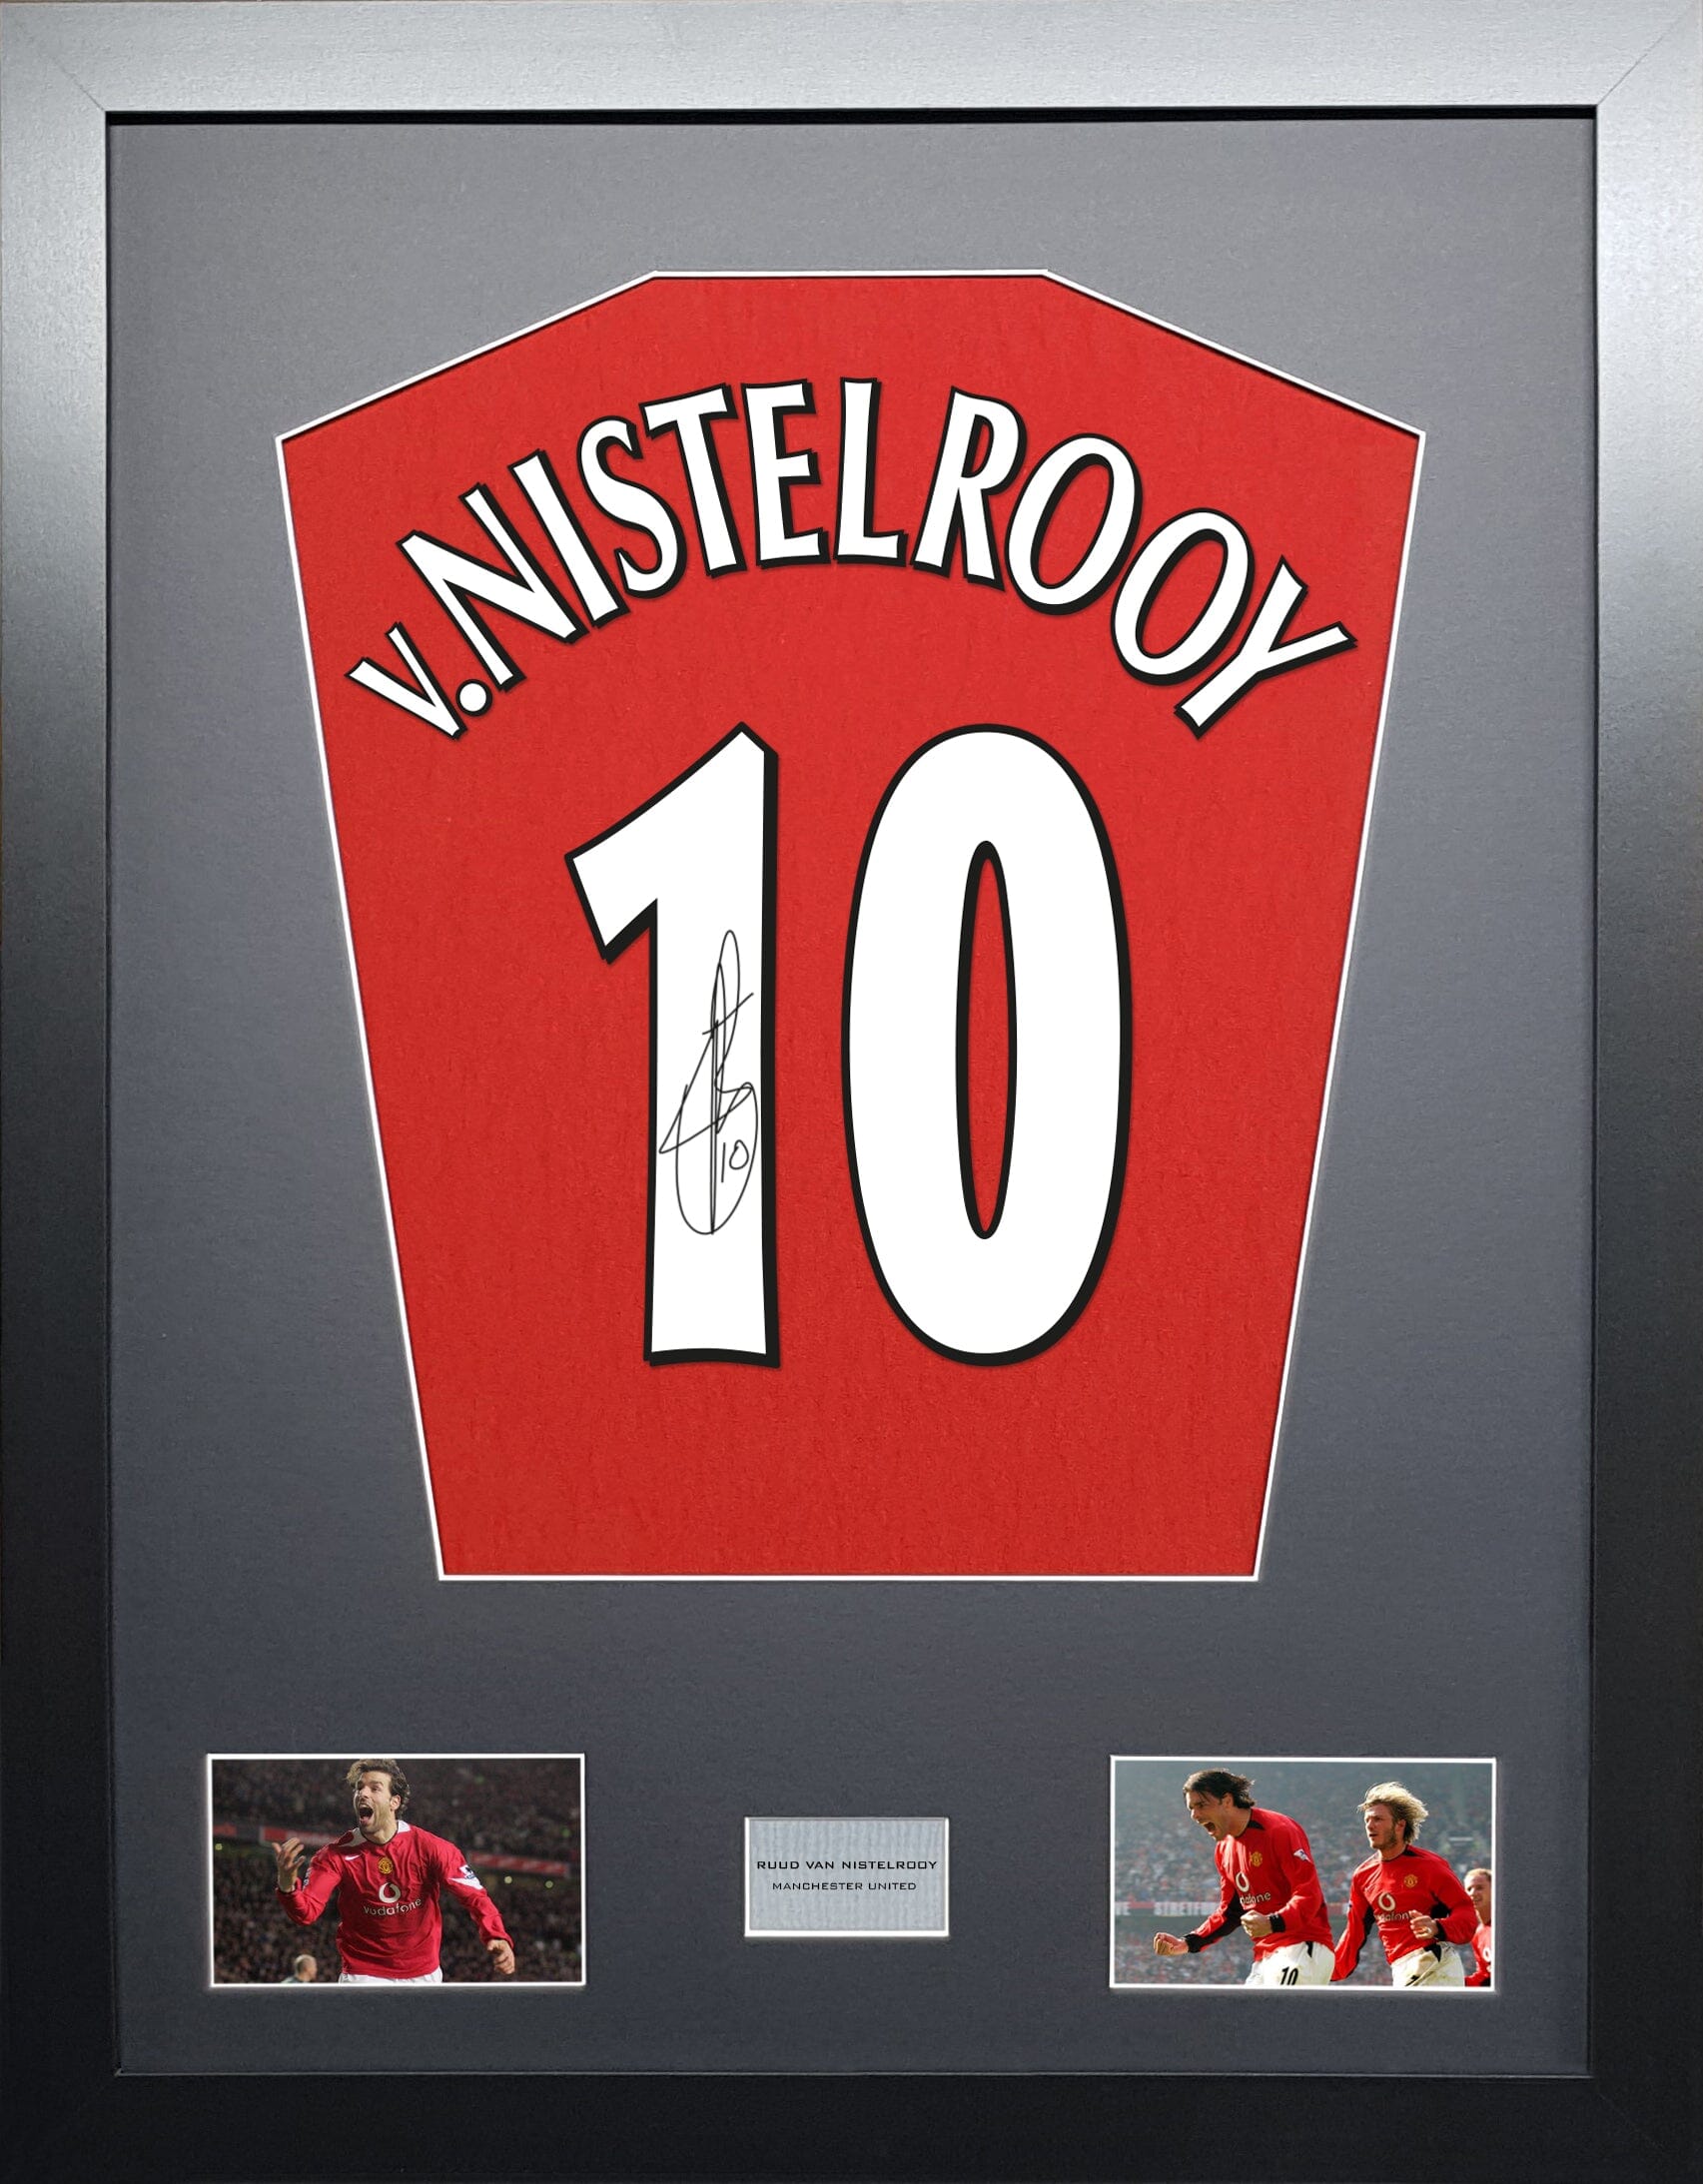 Ruud van Nistelrooy autograph